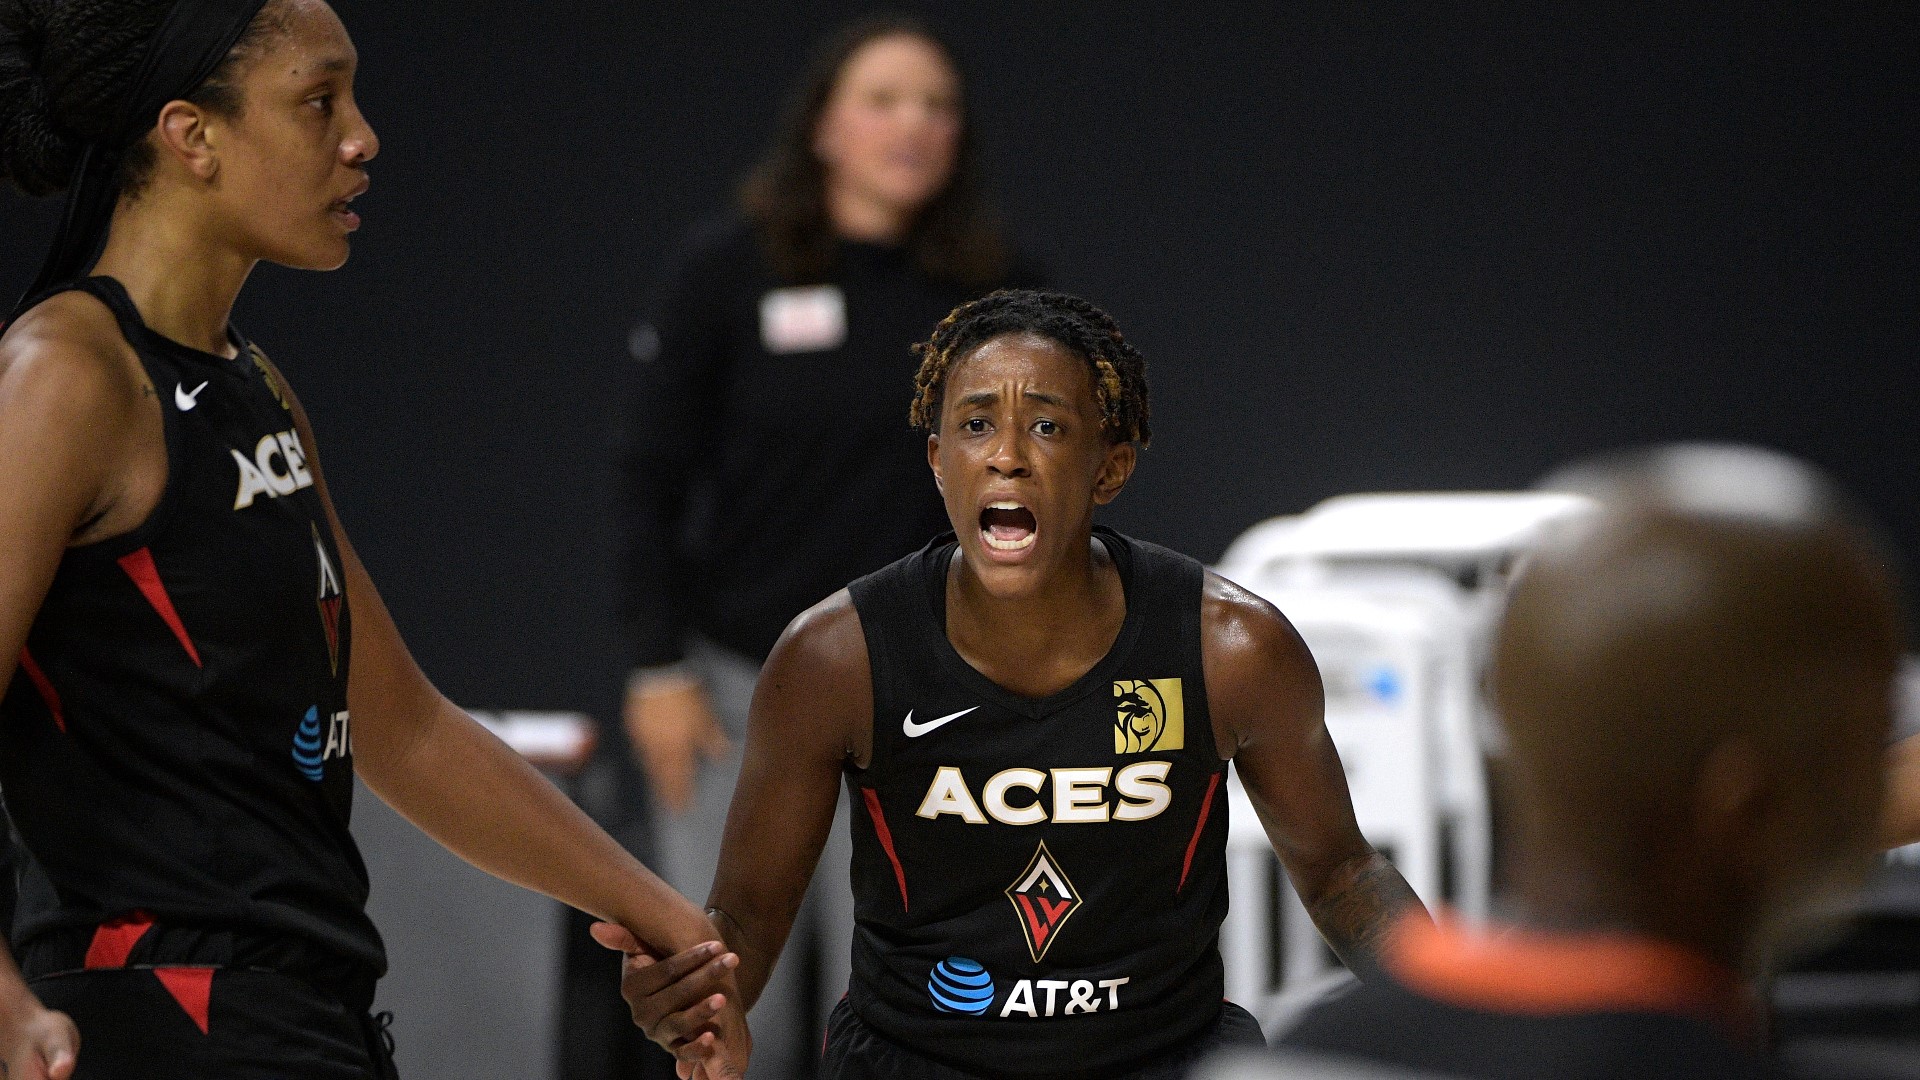 Aces sit atop AP preseason WNBA power poll